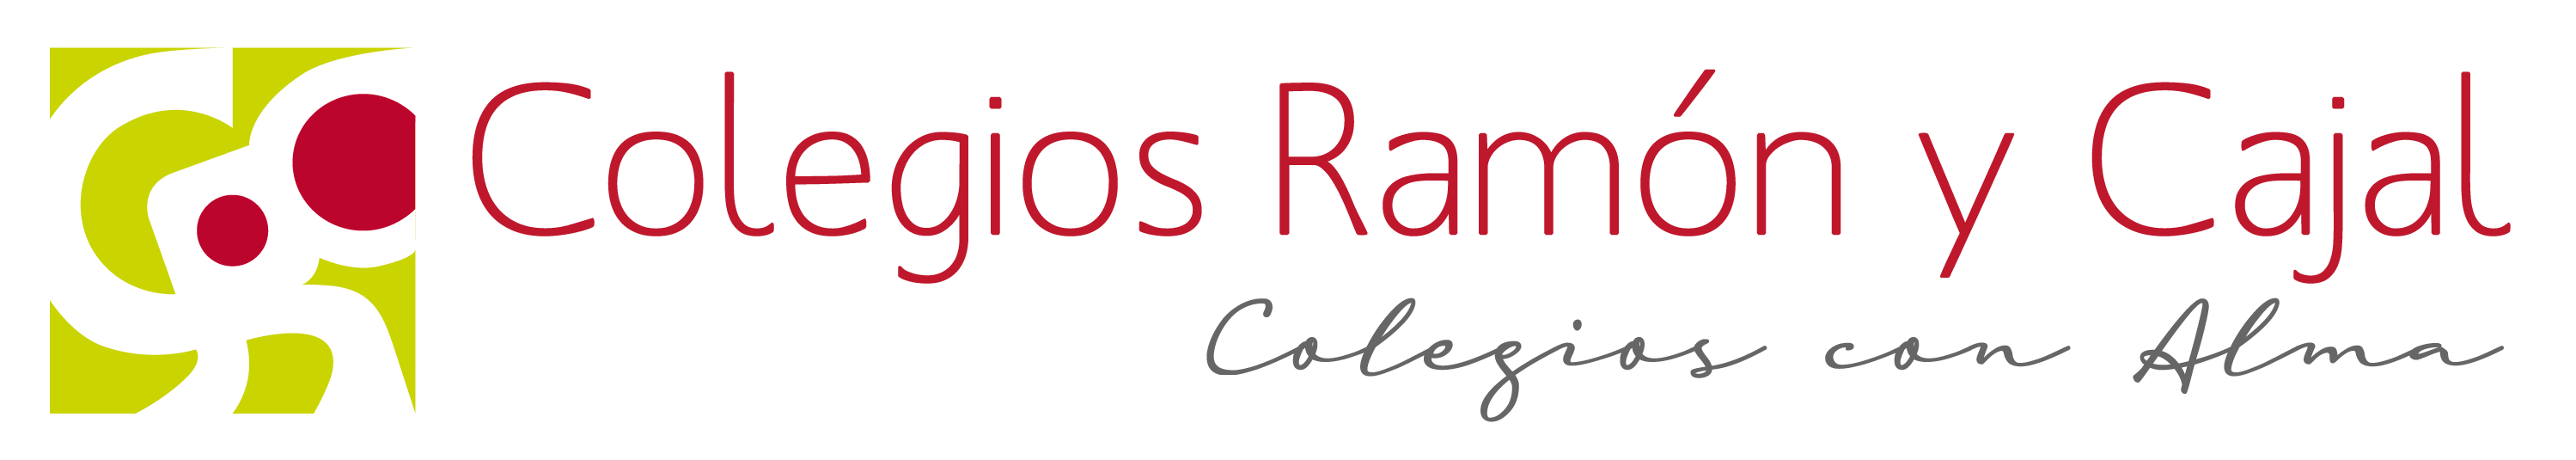 Logo-Colegios Ramón y Cajal con-Alma-Expandido-3000x535